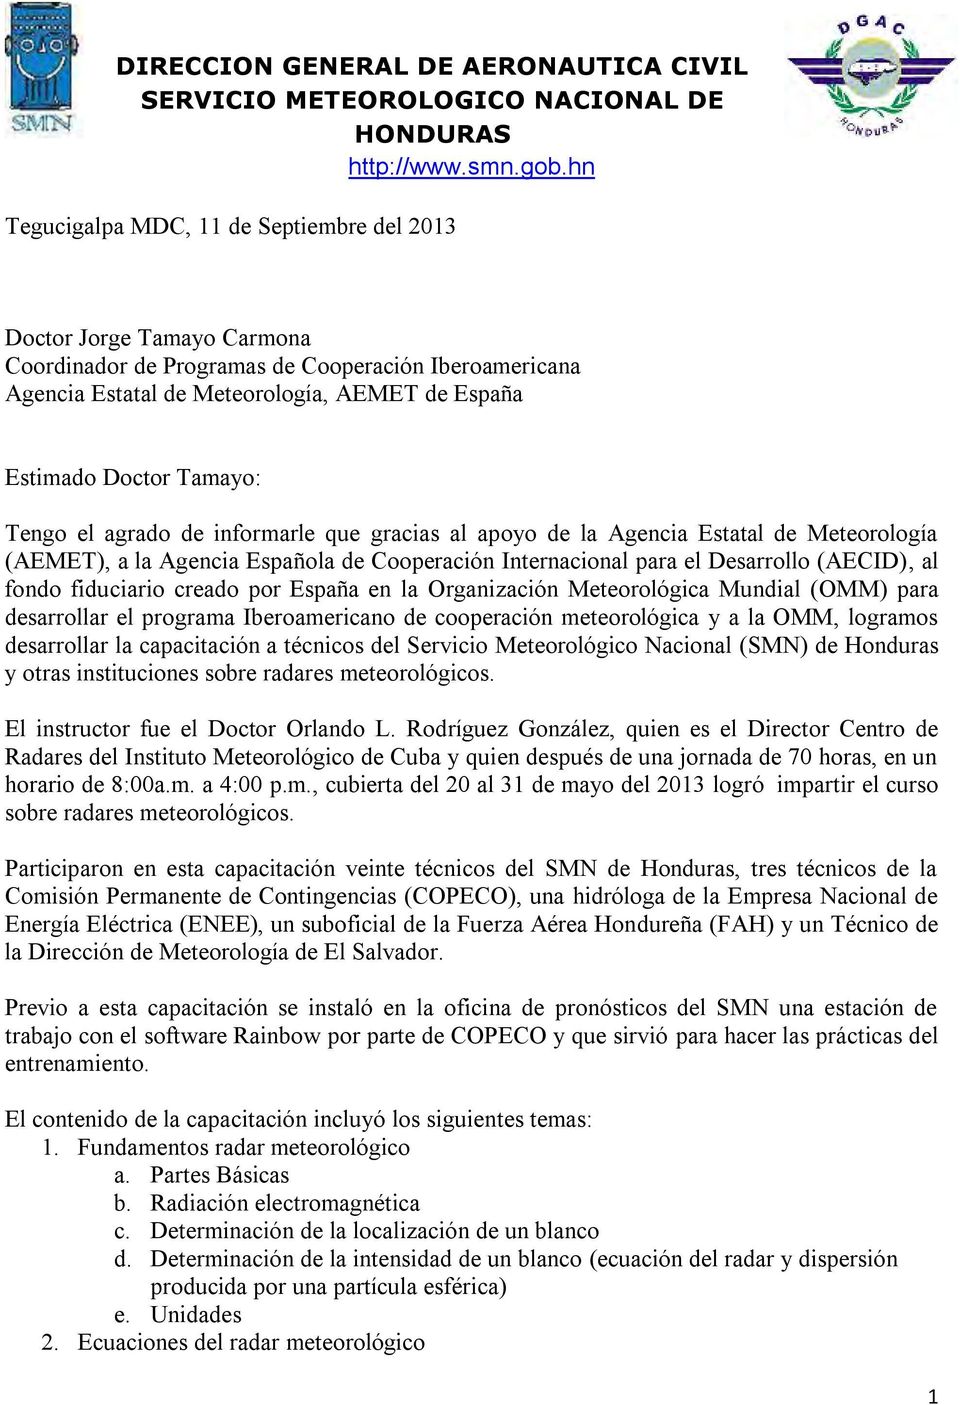 Tamayo: Tengo el agrado de informarle que gracias al apoyo de la Agencia Estatal de Meteorología (AEMET), a la Agencia Española de Cooperación Internacional para el Desarrollo (AECID), al fondo